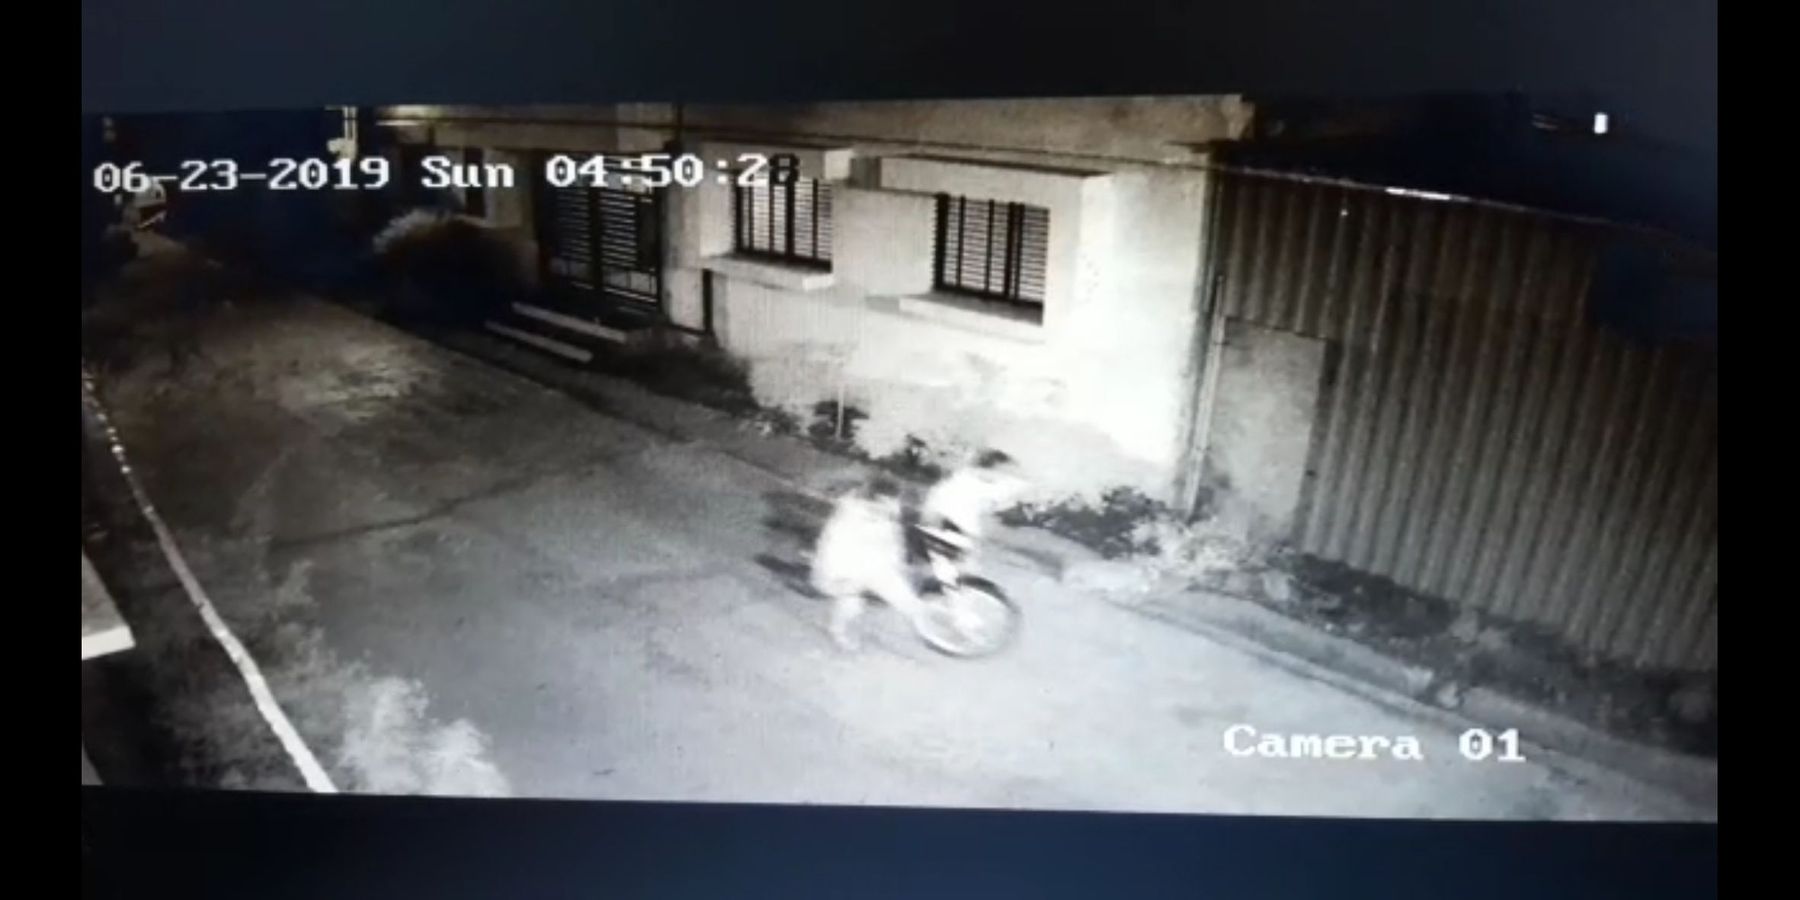 हैंडल लॉक नहीं खुला तो बाइक उठाकर ले गए बदमाश सीसीटीवी कैमरे में कैद हुए बदमाश